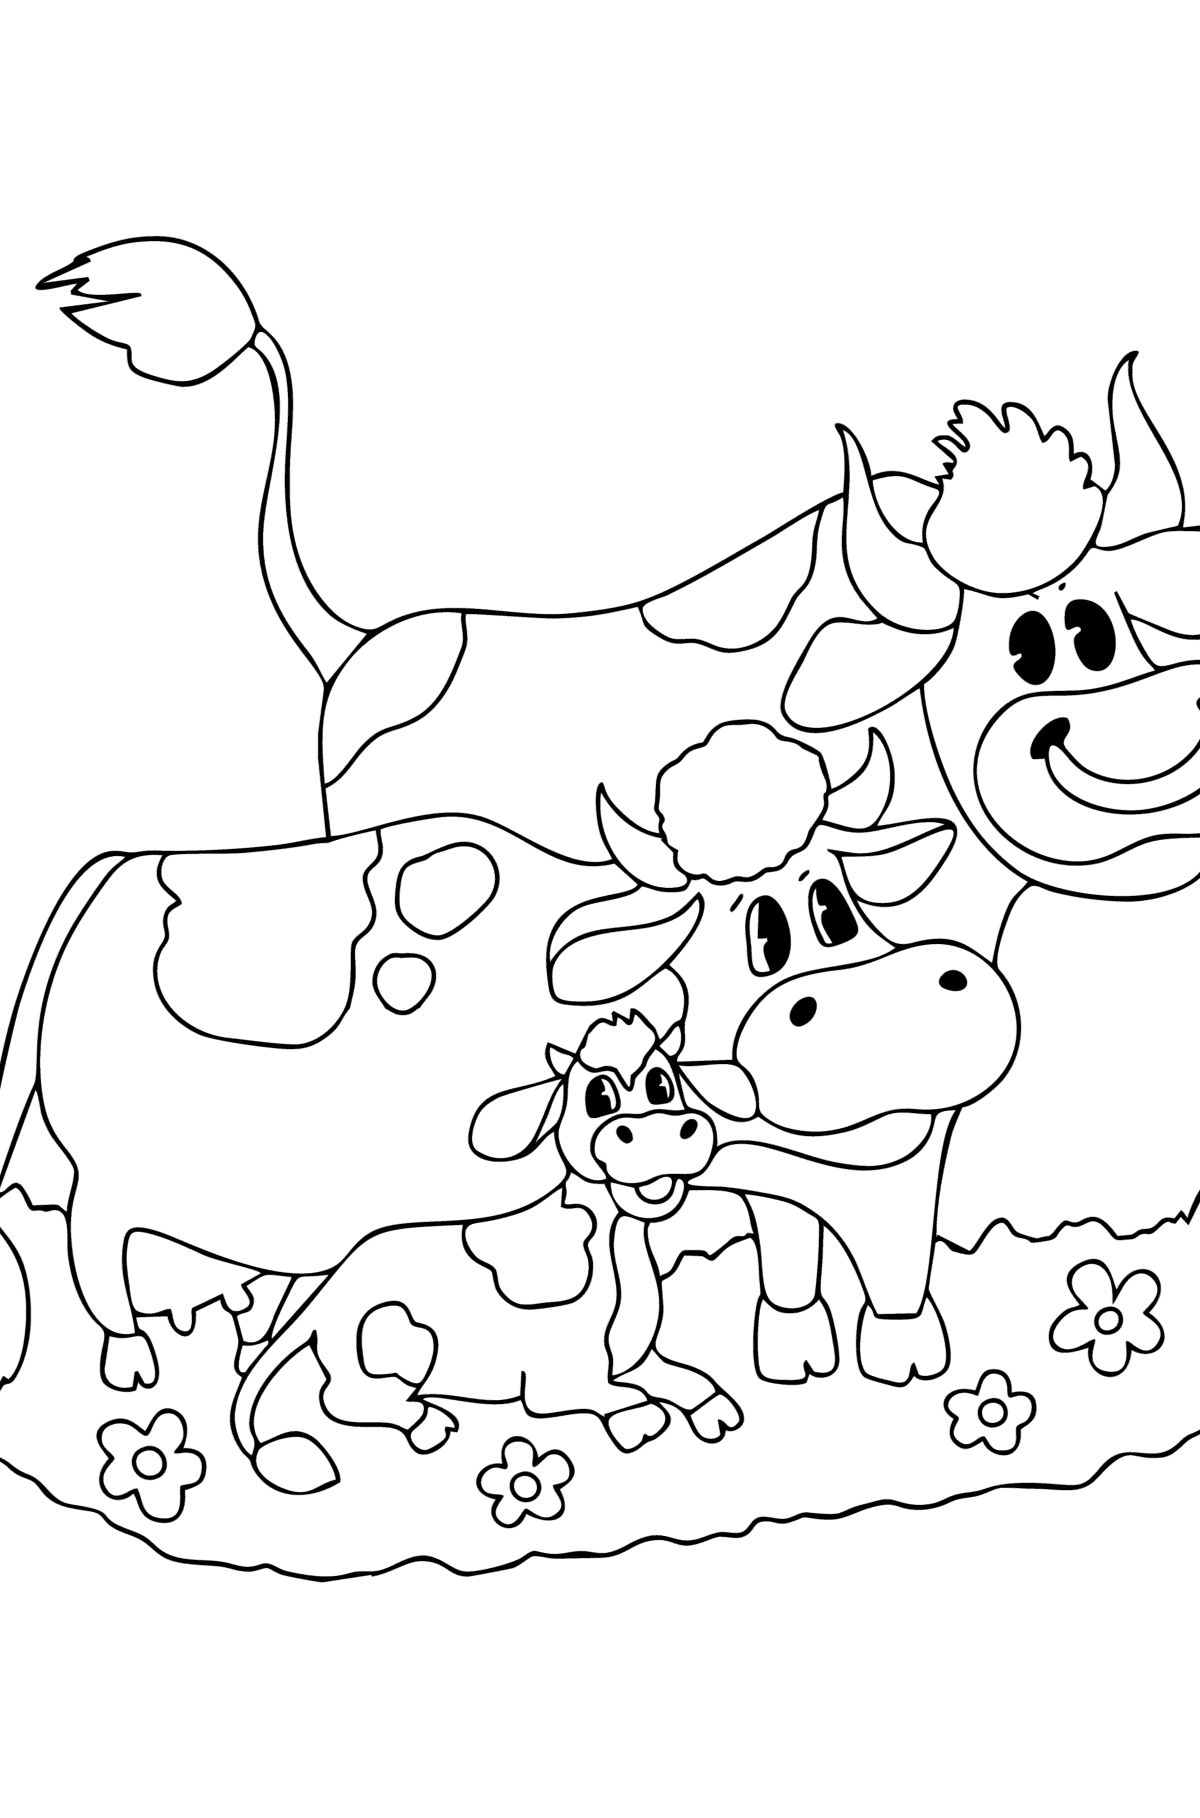 Tegning til fargelegging Ku, okse og kalv - Tegninger til fargelegging for barn